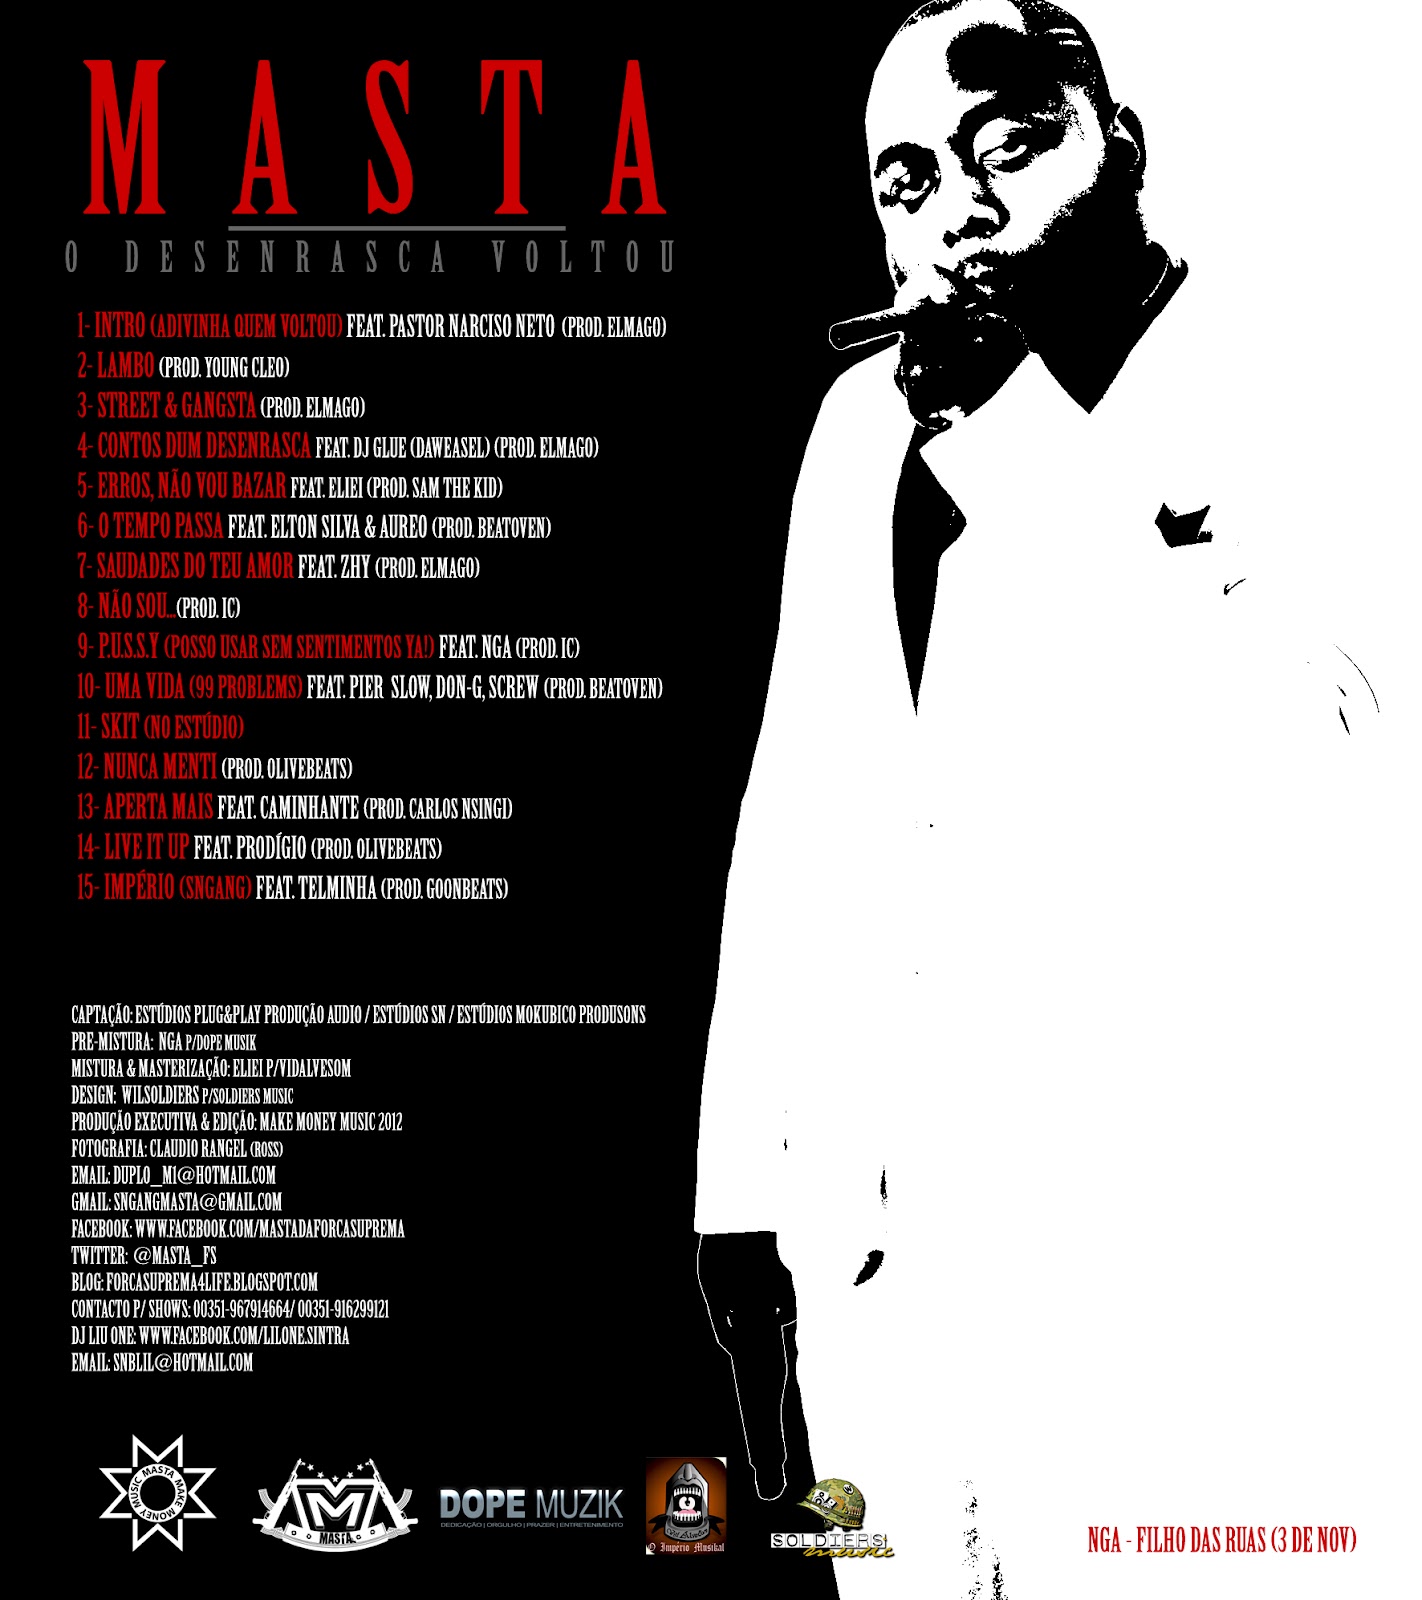 Masta - O Desenrasca Voltou (Street Álbum) 2012  Dj-Liu-One-+-Masta-Desenrasca-Voltou-Tras